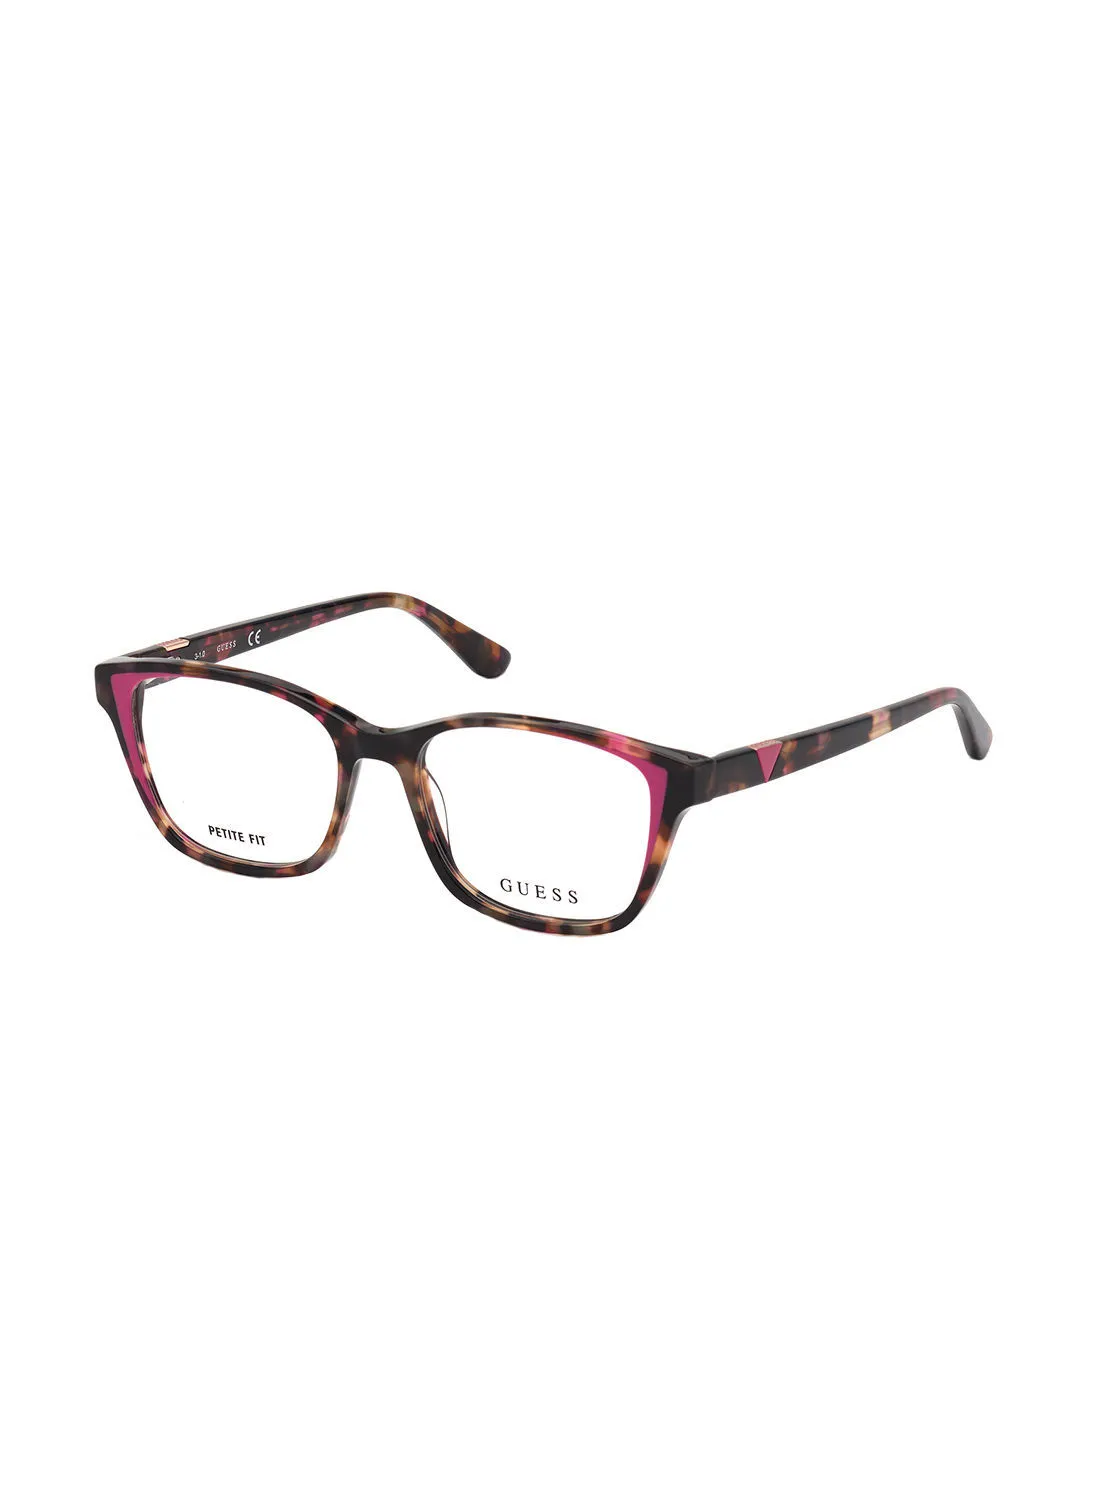 GUESS Square Eyewear Optical Frame GU281007454